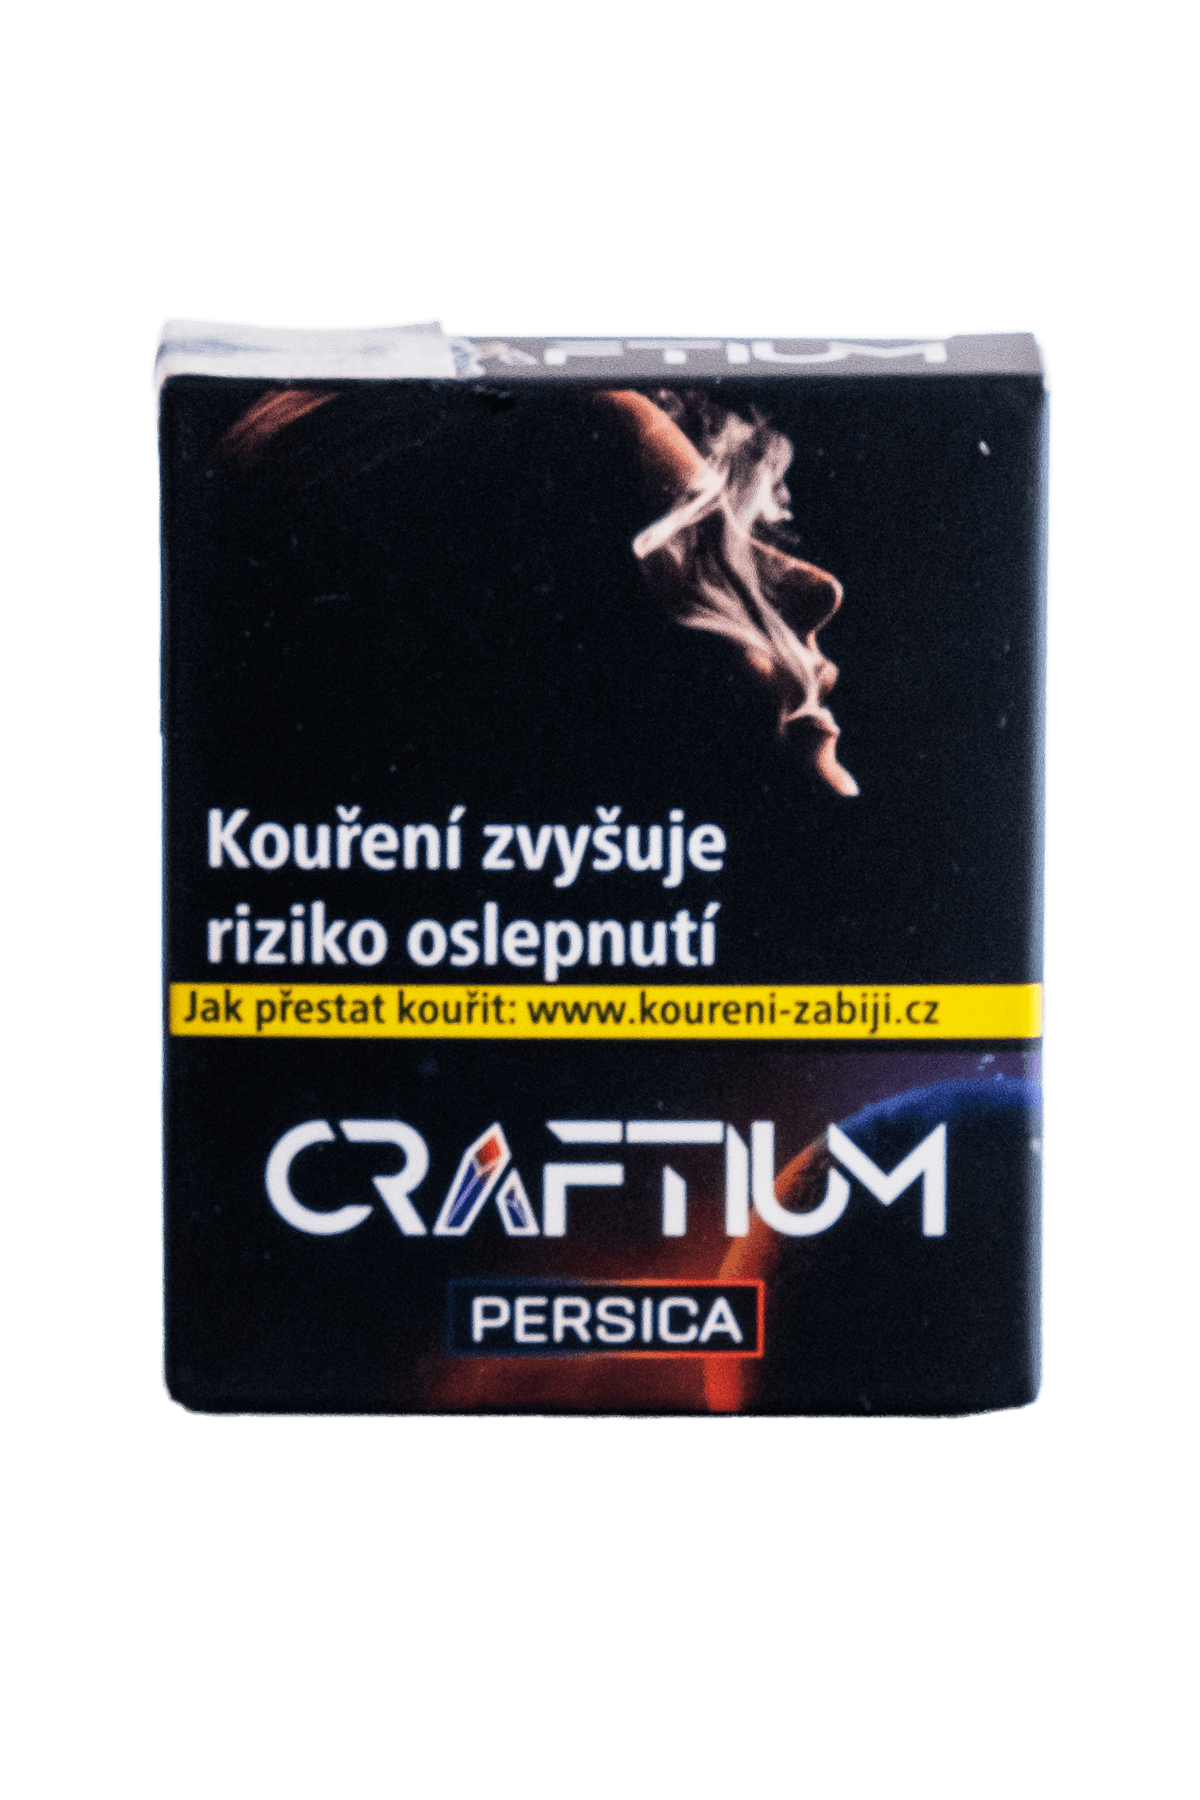 Tabák - Craftium 20g - Persica